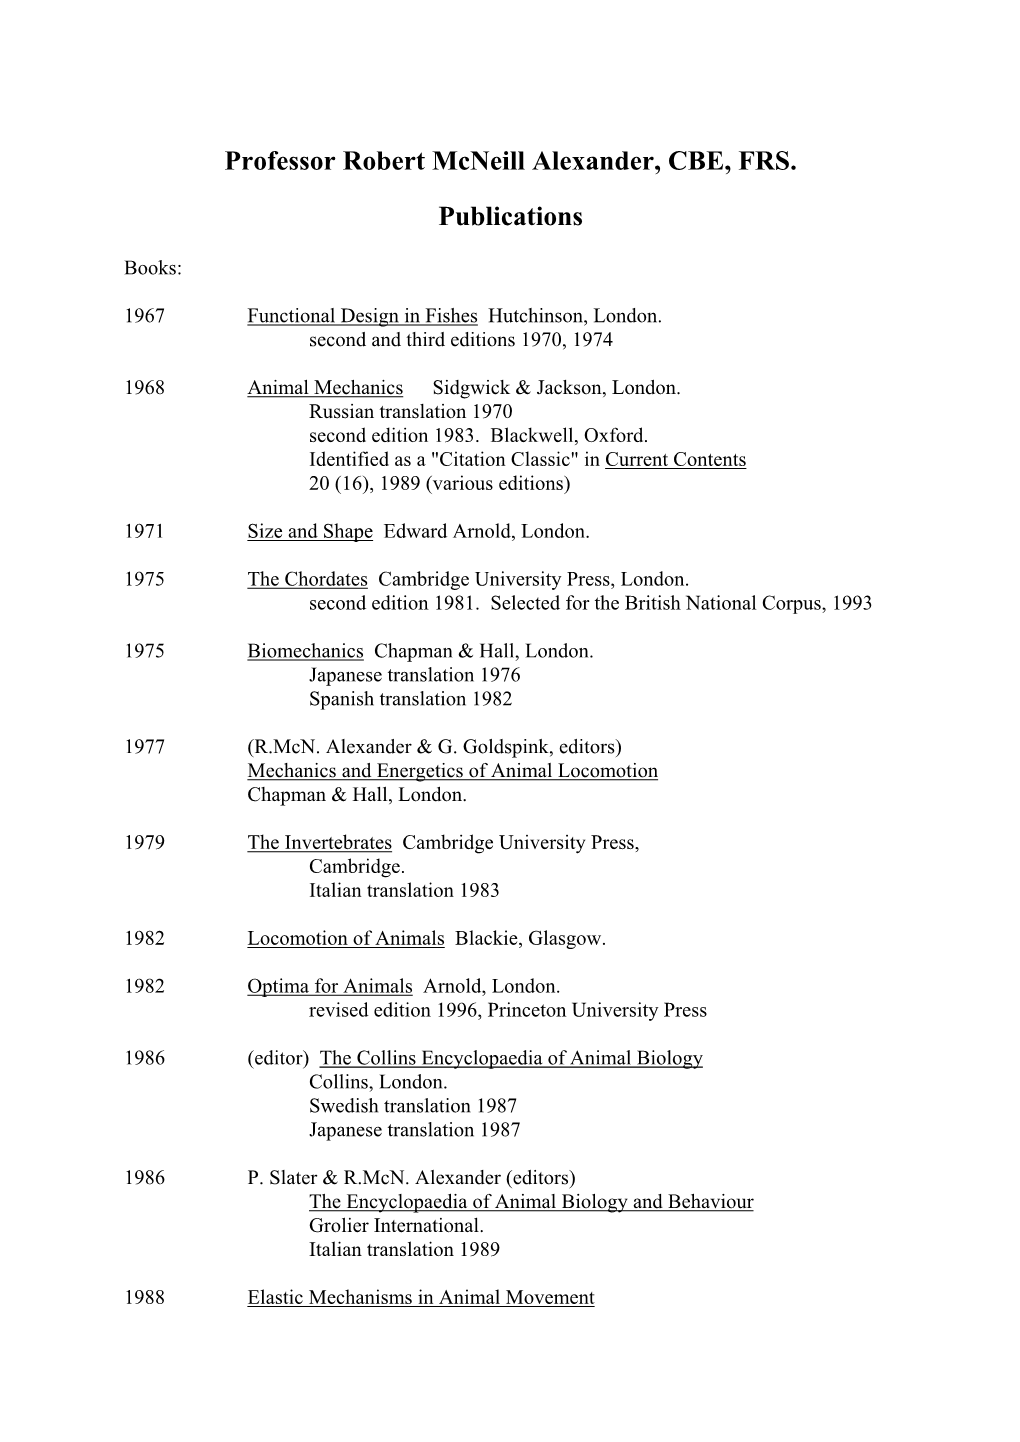 Professor Robert Mcneill Alexander, CBE, FRS. Publications